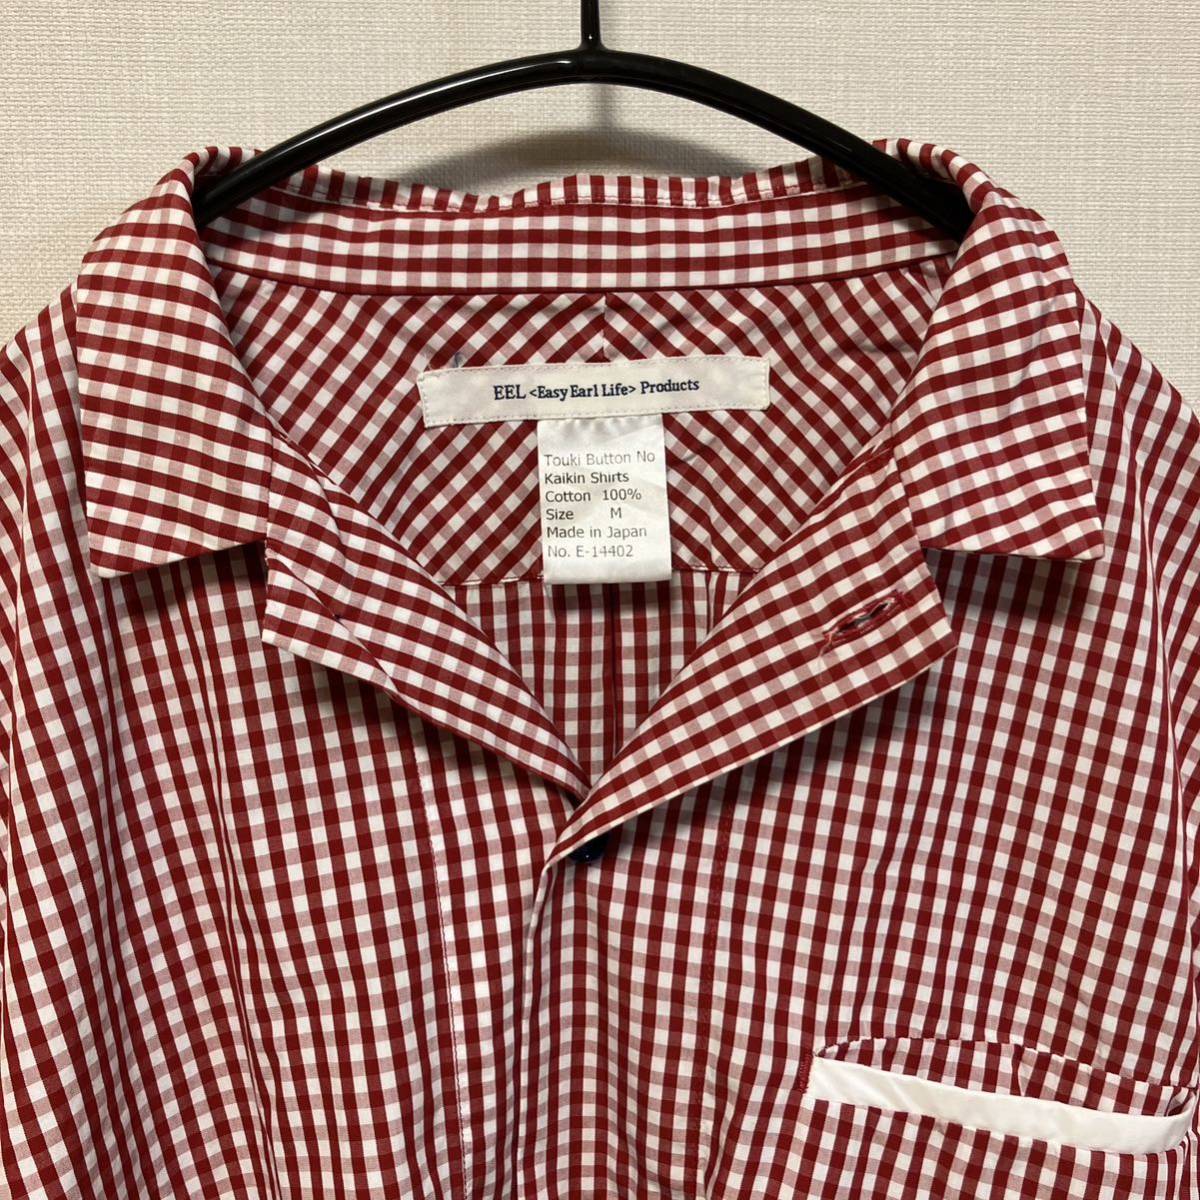 イール EEL /Touki Button No Kaikin Shirts /半袖シャツ /オープンカラー /陶器ボタン /チェック /レッド /日本製 /サイズMの画像1